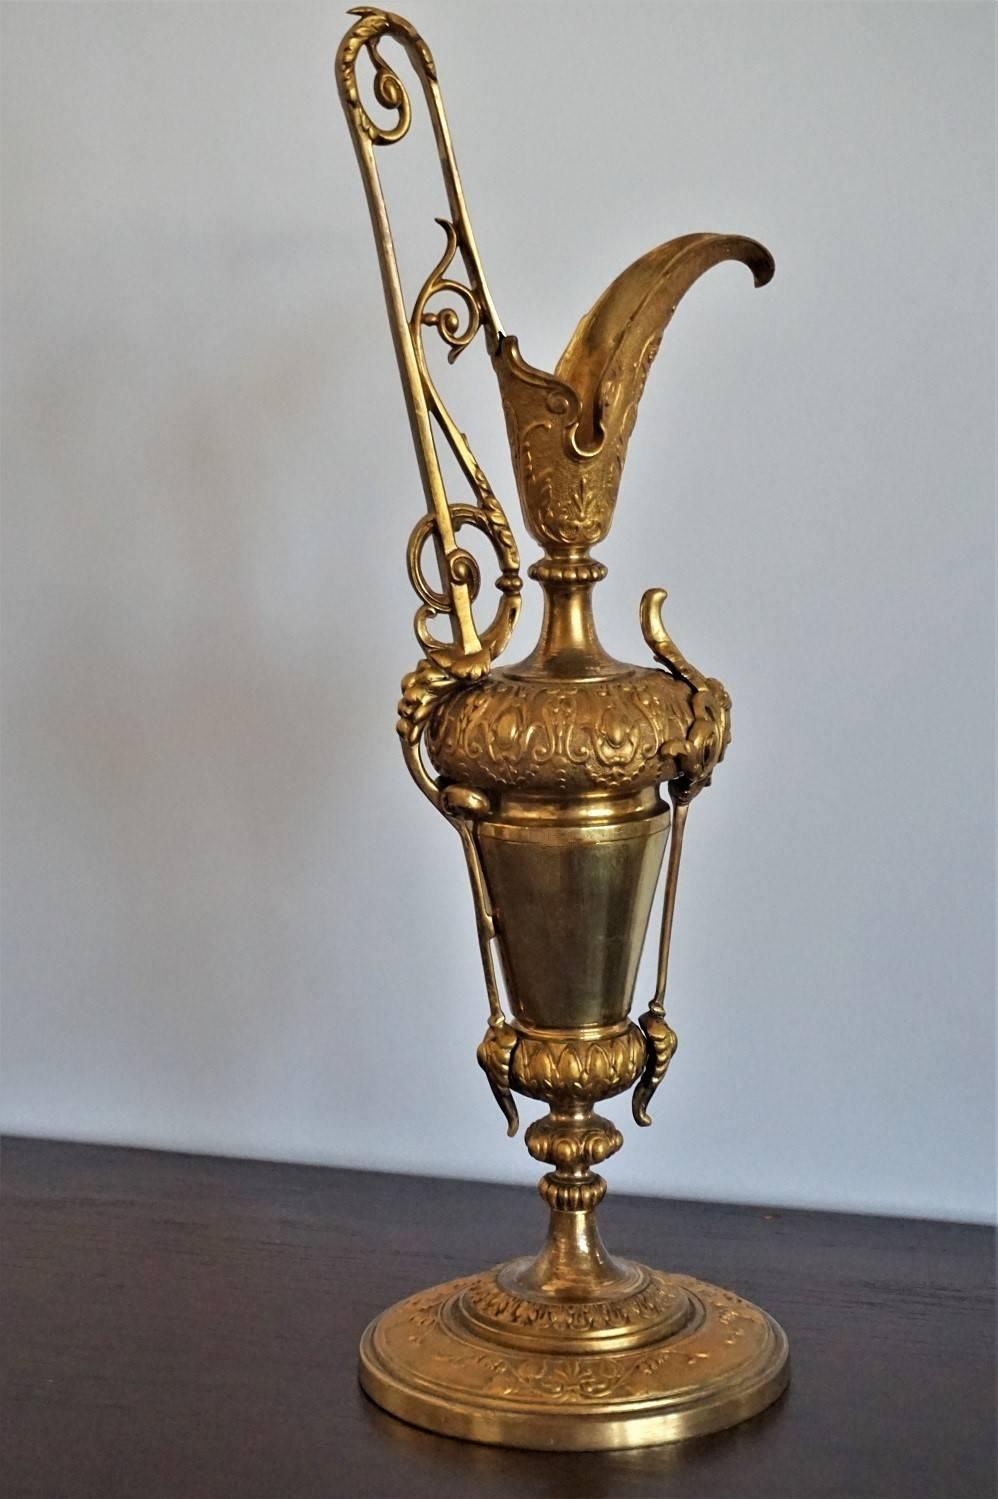 Jugendstil-Kanne aus massivem vergoldetem Bronze und Messing, reich verziert, Spanien, um 1900-1910.

Maßnahmen:
Höhe 40 cm (15,75 Zoll)
Breite 5,15 (13 cm)
Tiefe 5,15 (13 cm).

Sehr guter Zustand mit schöner Patina des Alters.